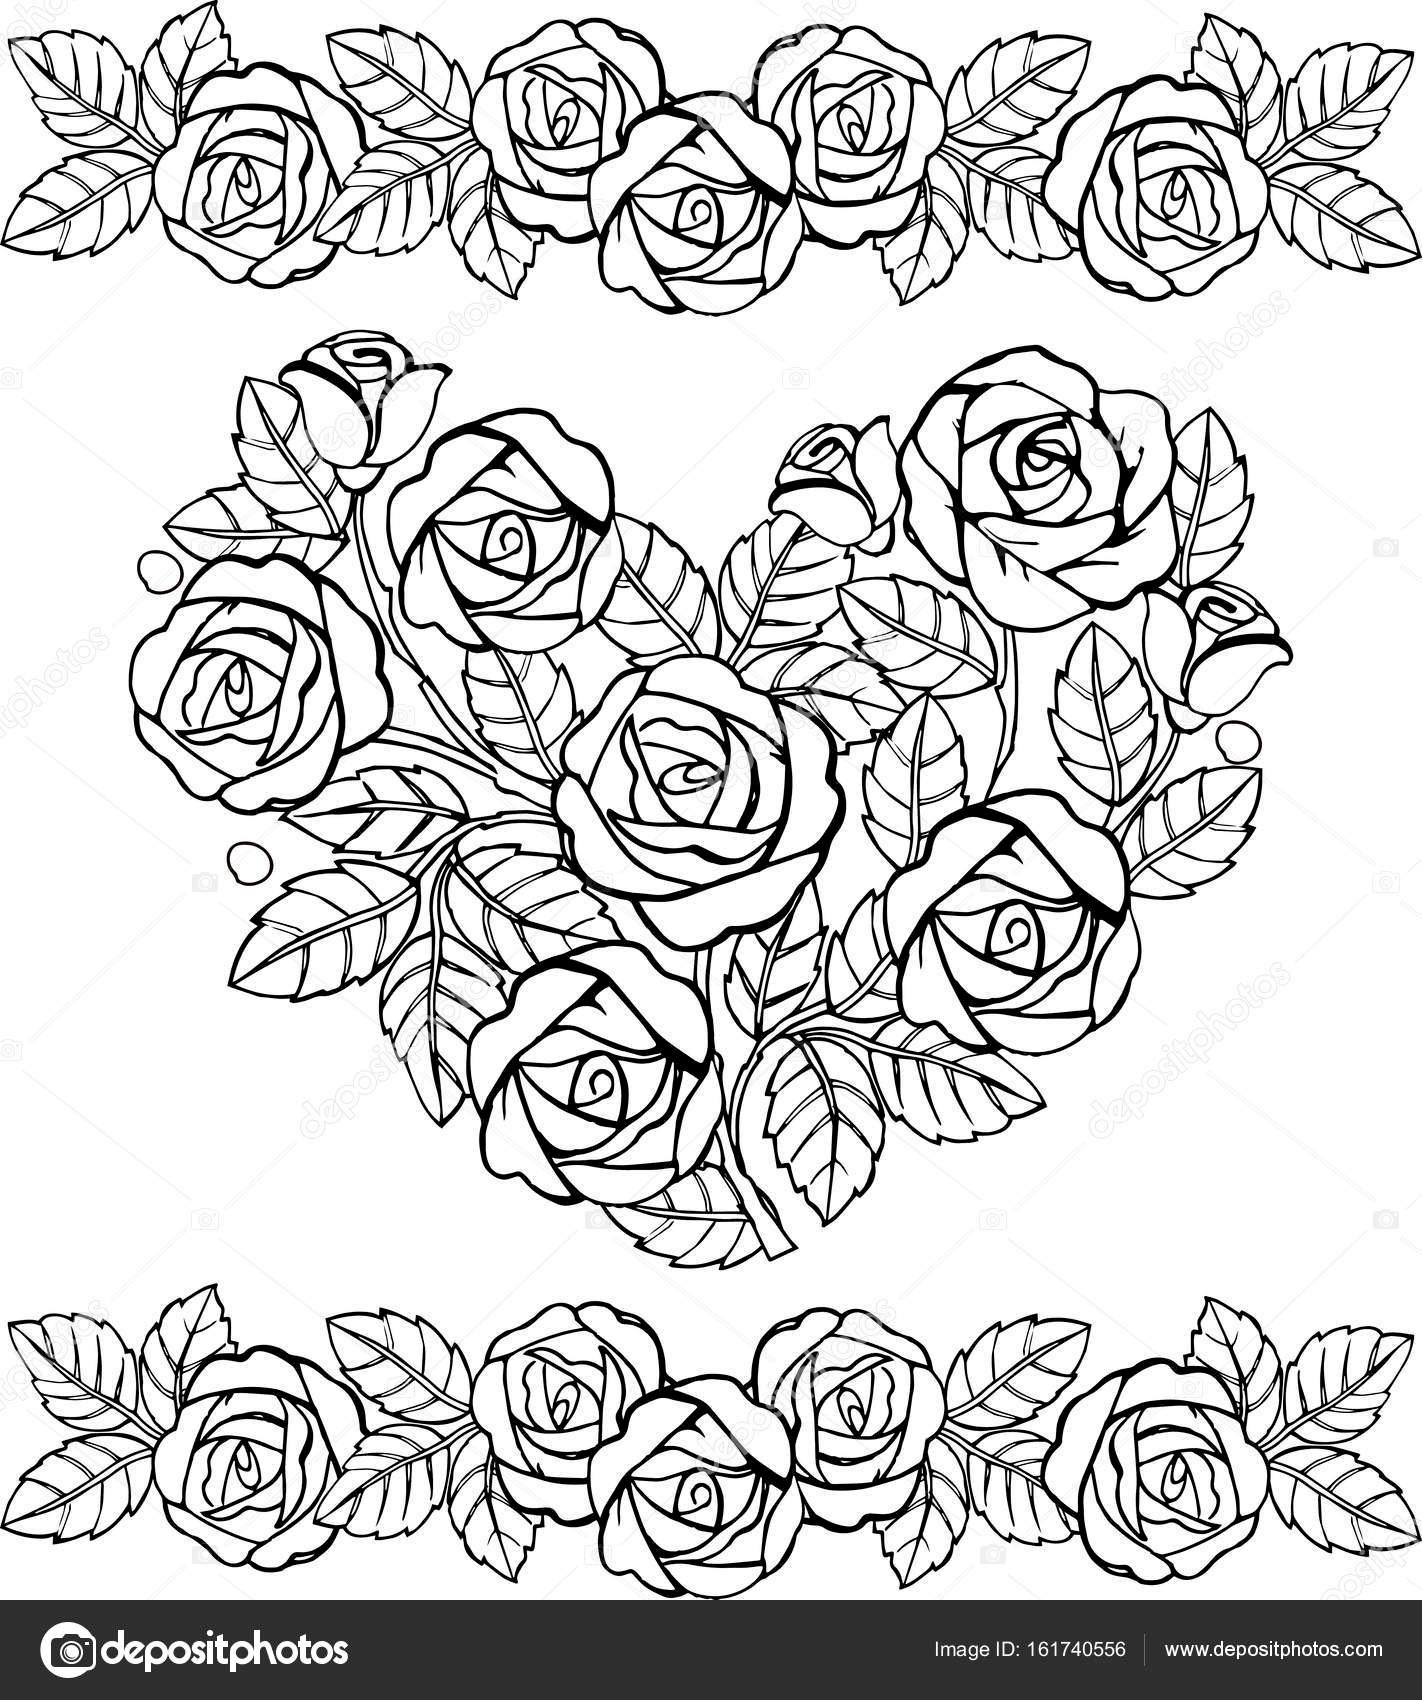 Desenhos De Rosas Para Colorir E Imprimir Muito F Cil Aprender A Desenhar